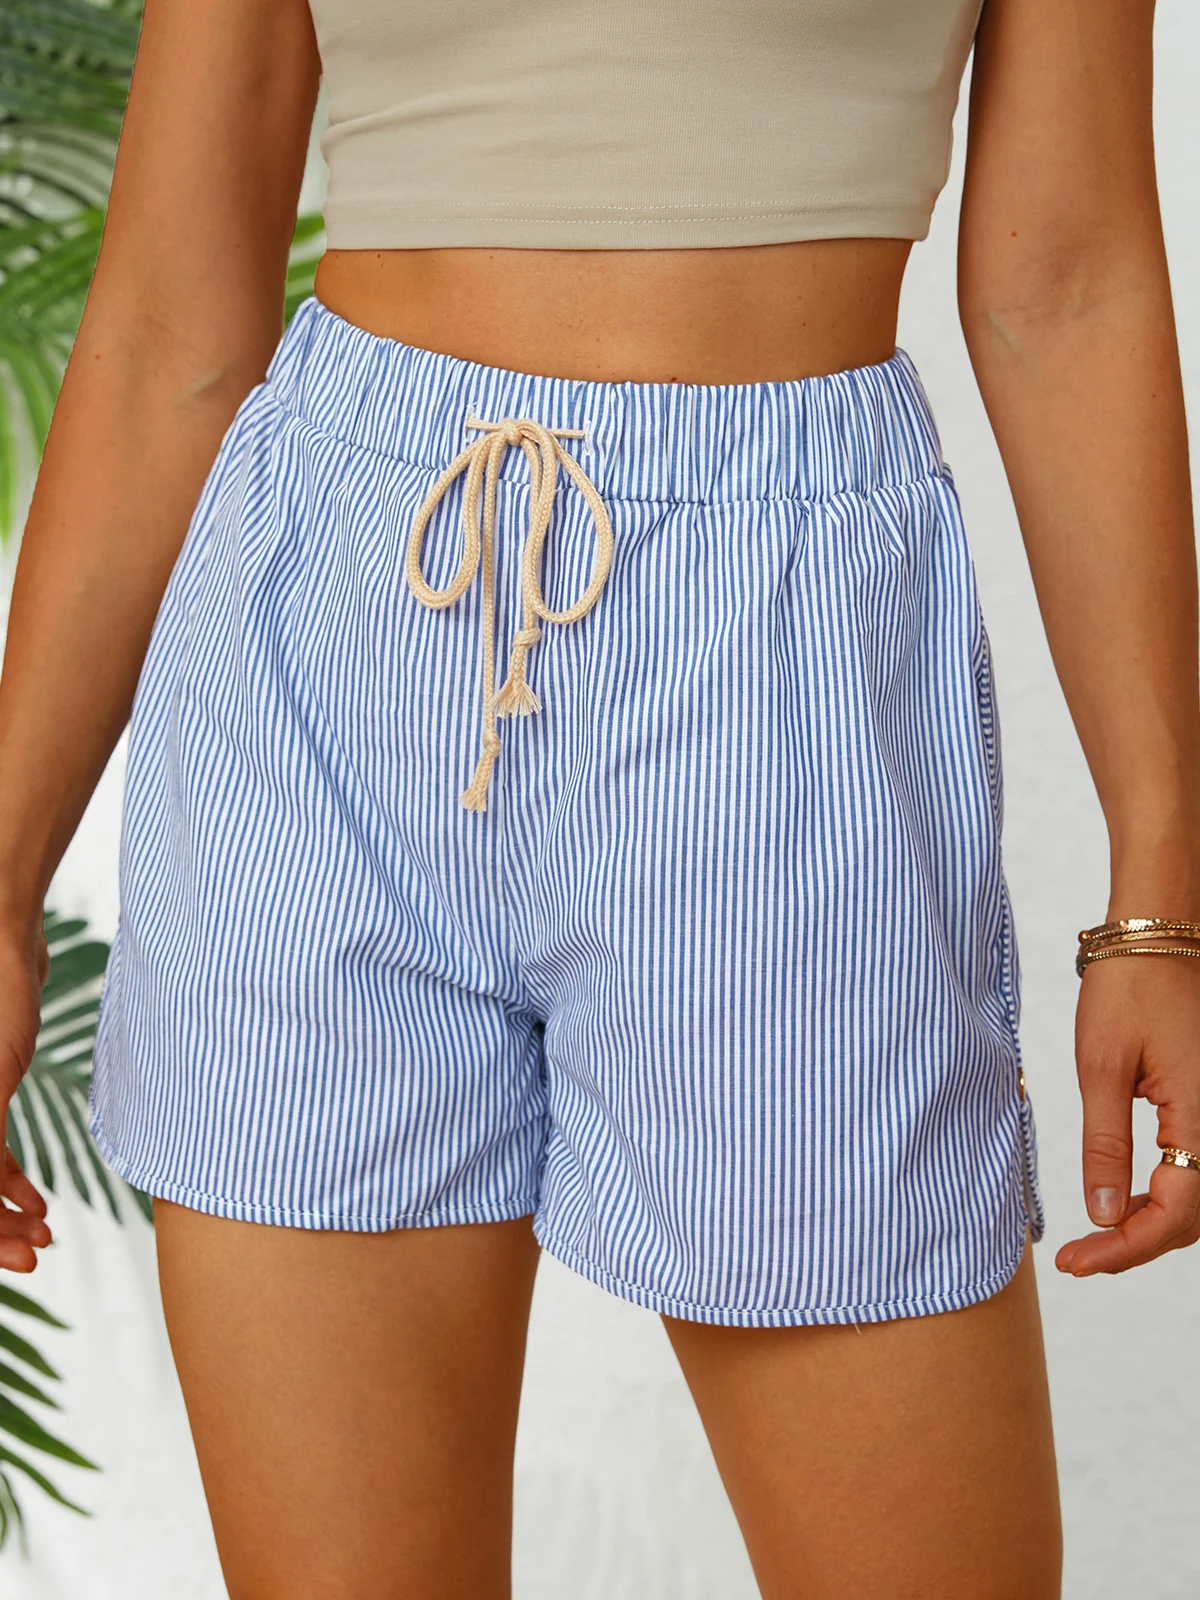 ANNIECLOTH Stripes Women Summer Shorts Shorts